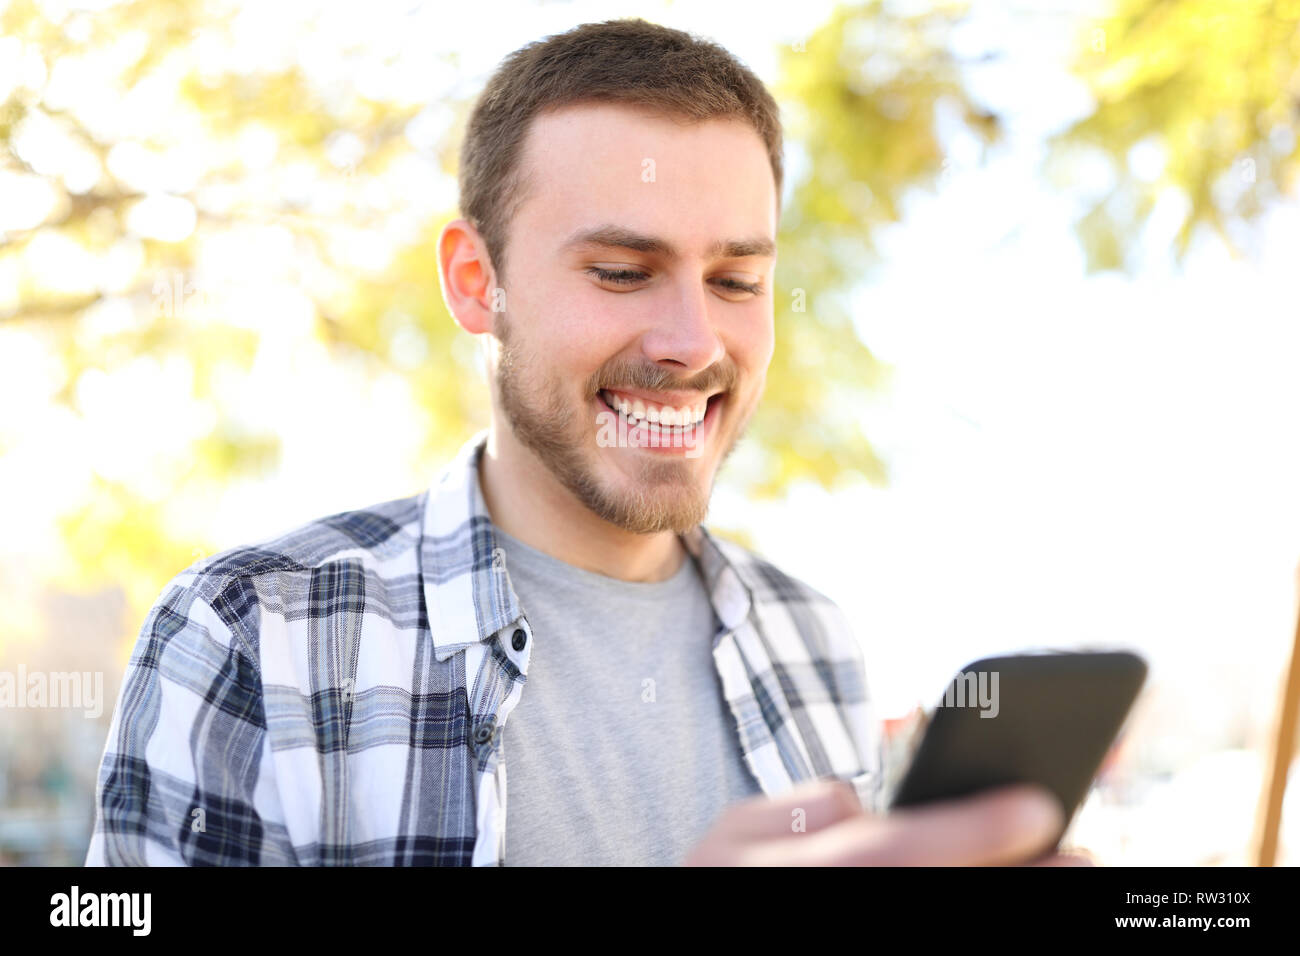 Portrait eines glücklichen Menschen mit einem smart phone Wandern in einem Park Stockfoto